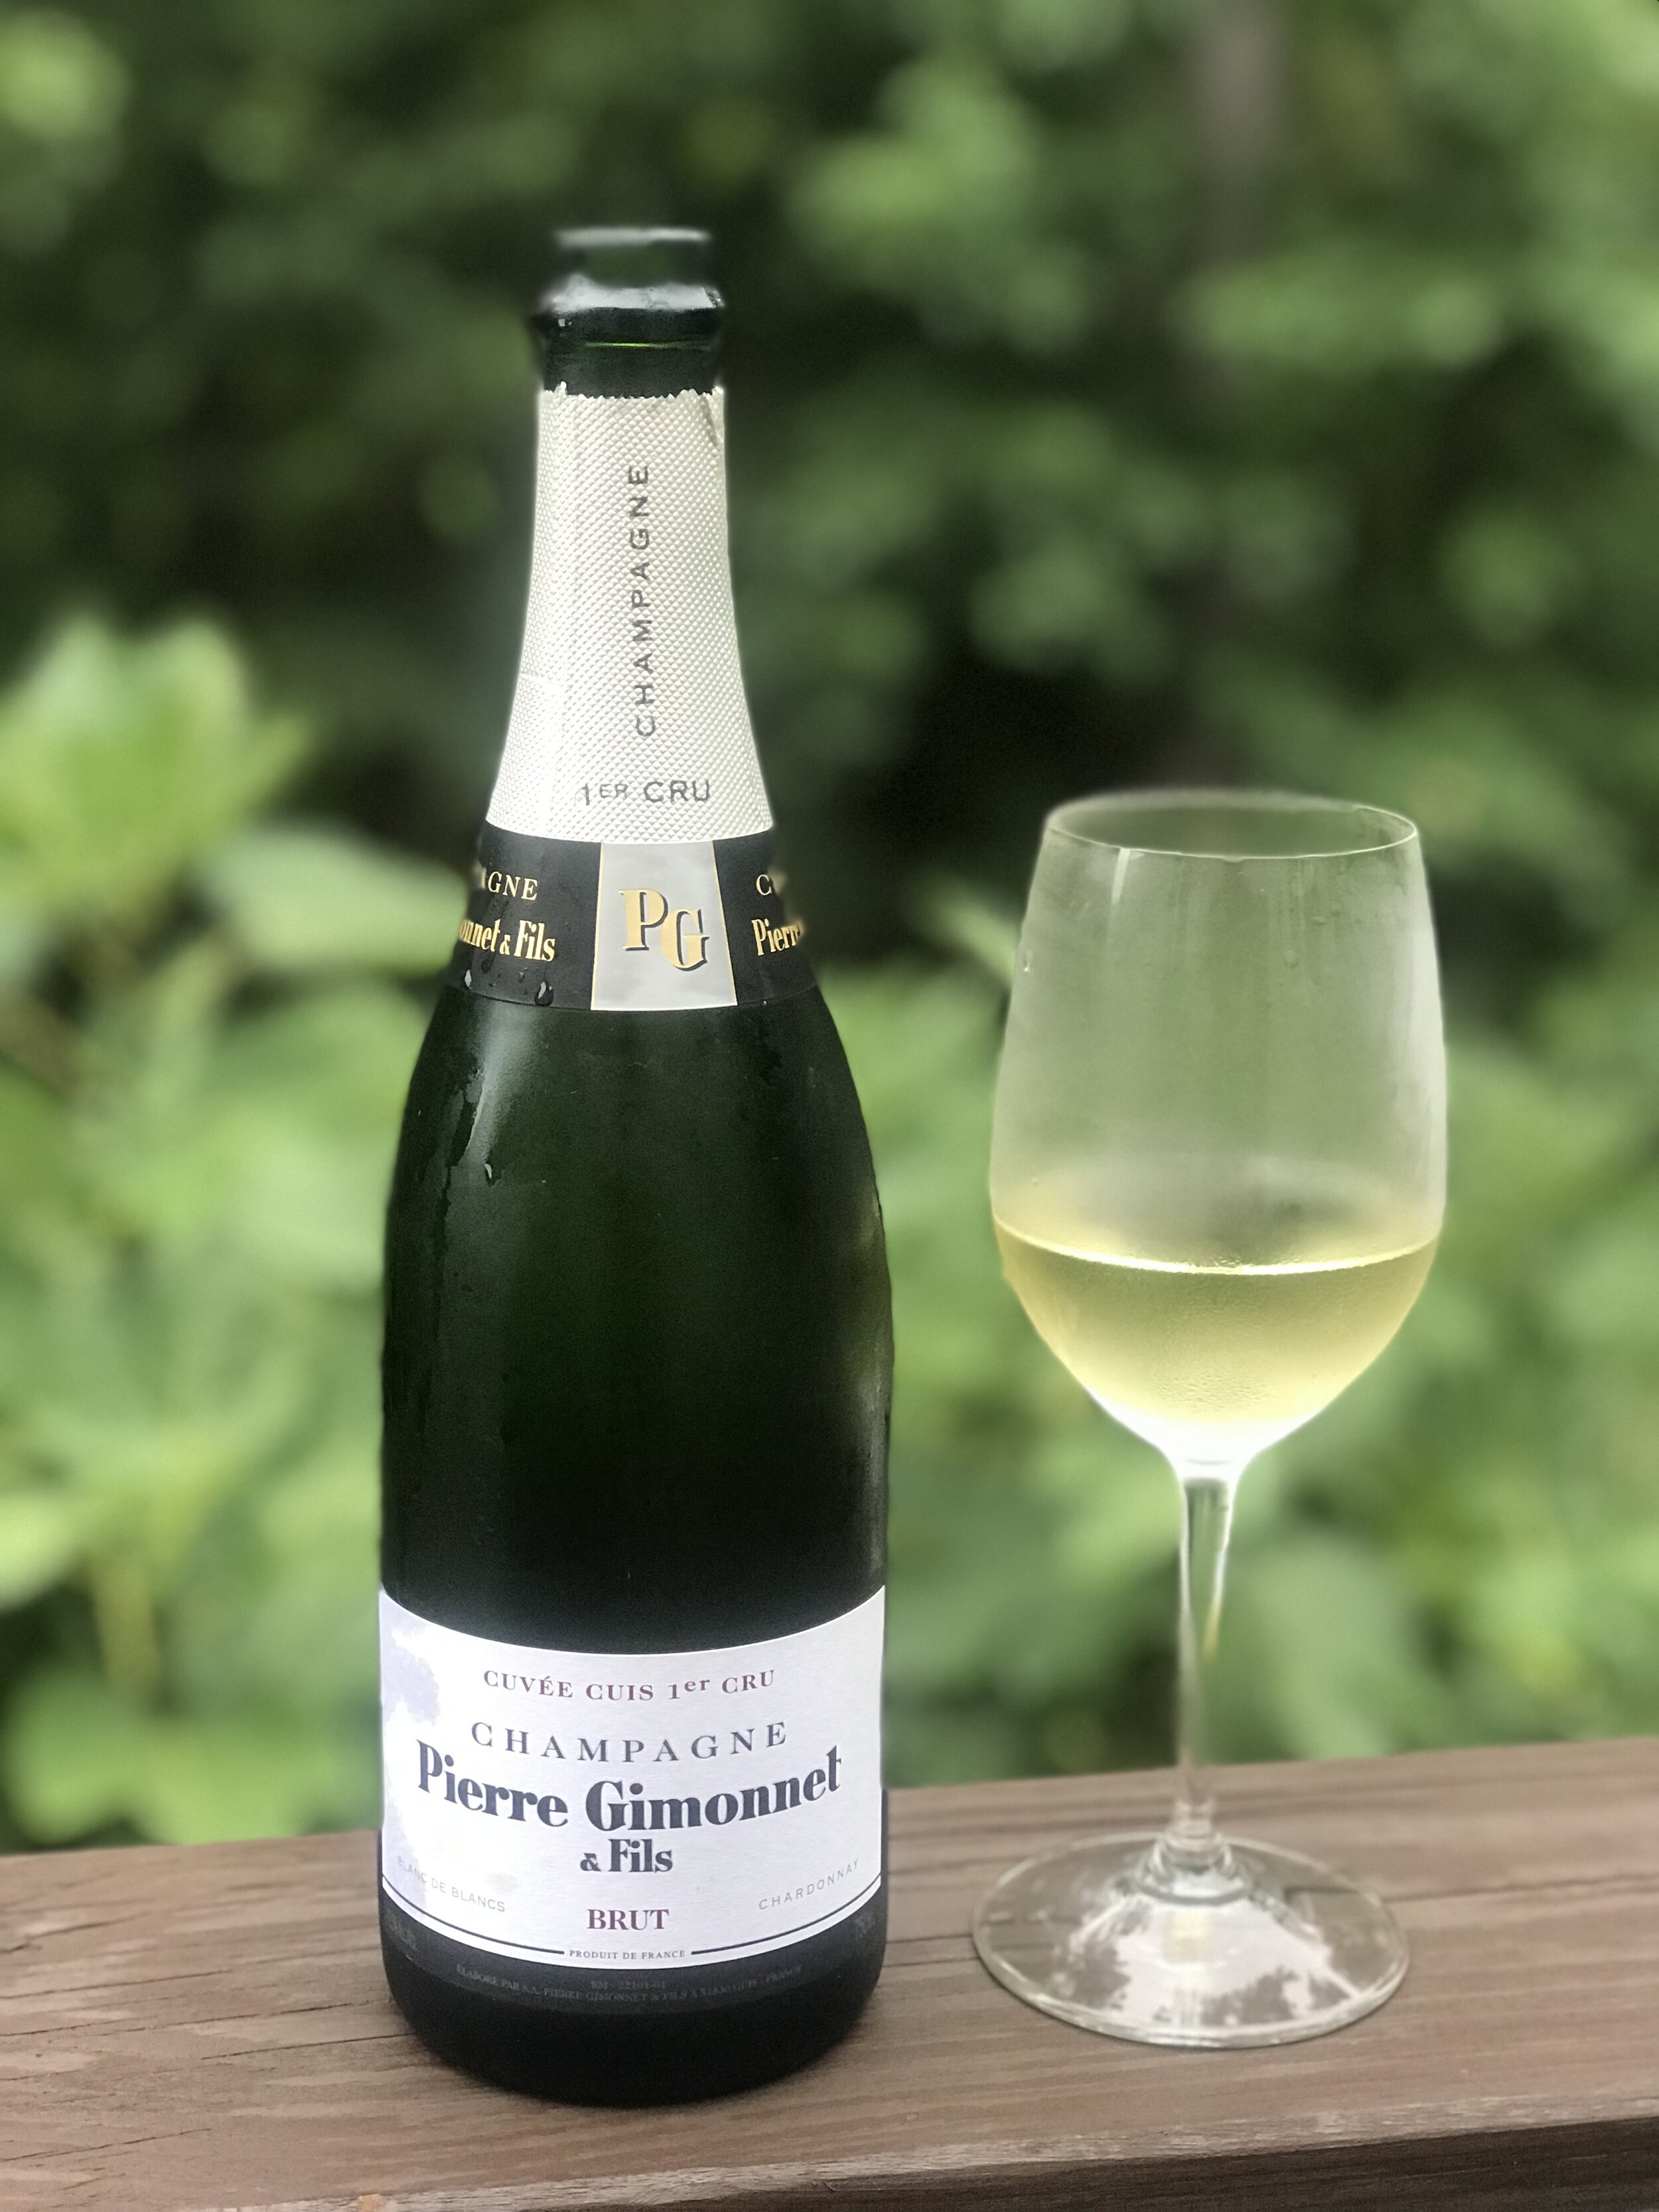 ALFRED GRATIEN Champagne Brut N.V. #,38 € Bott./netto